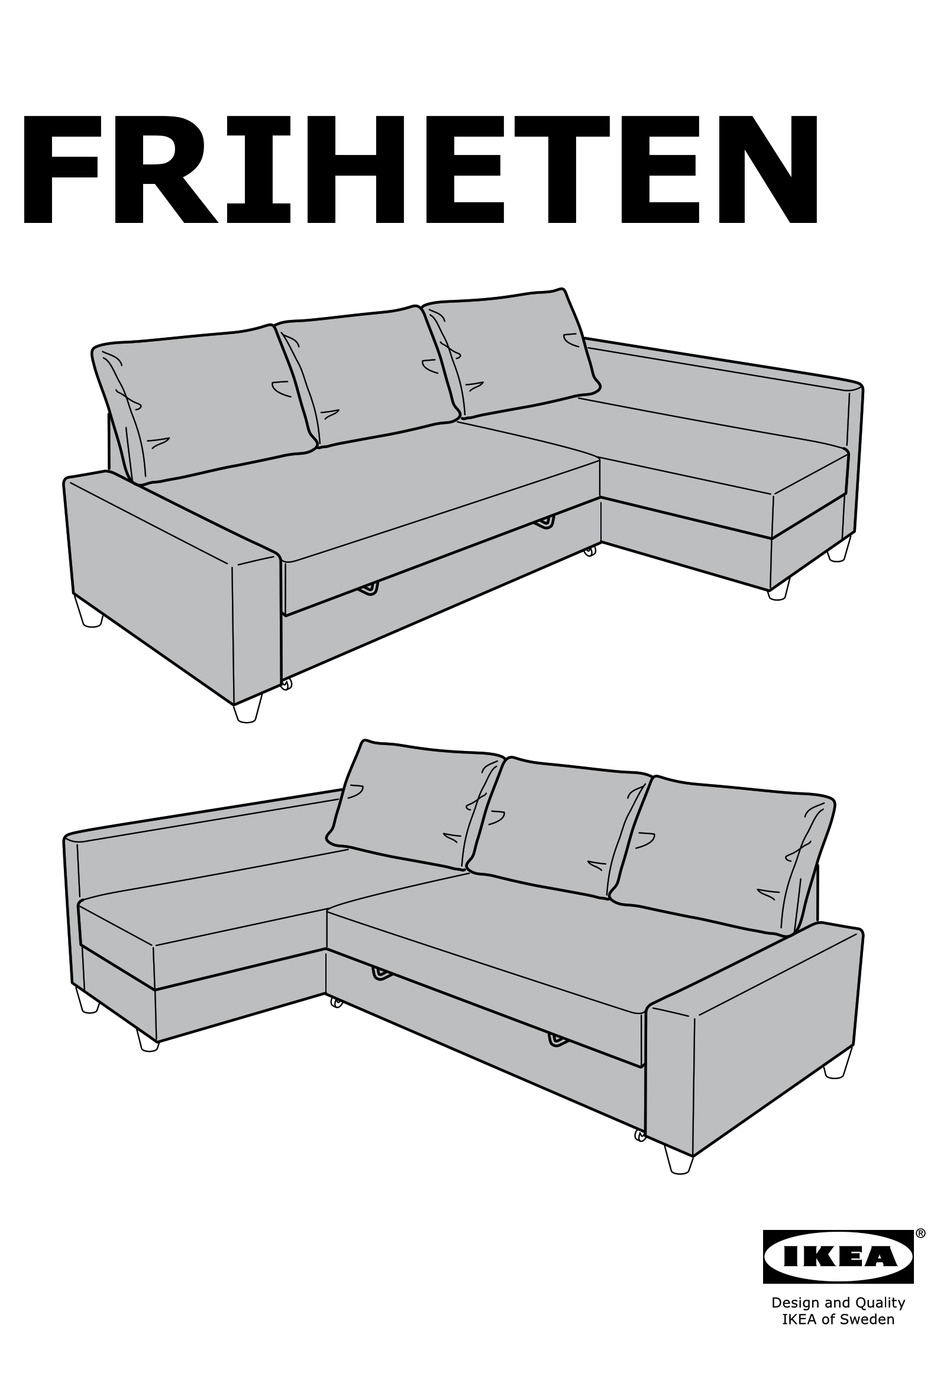 Ikea Friheten Assembly Instructions, Sofa Bed Assembly Instructions